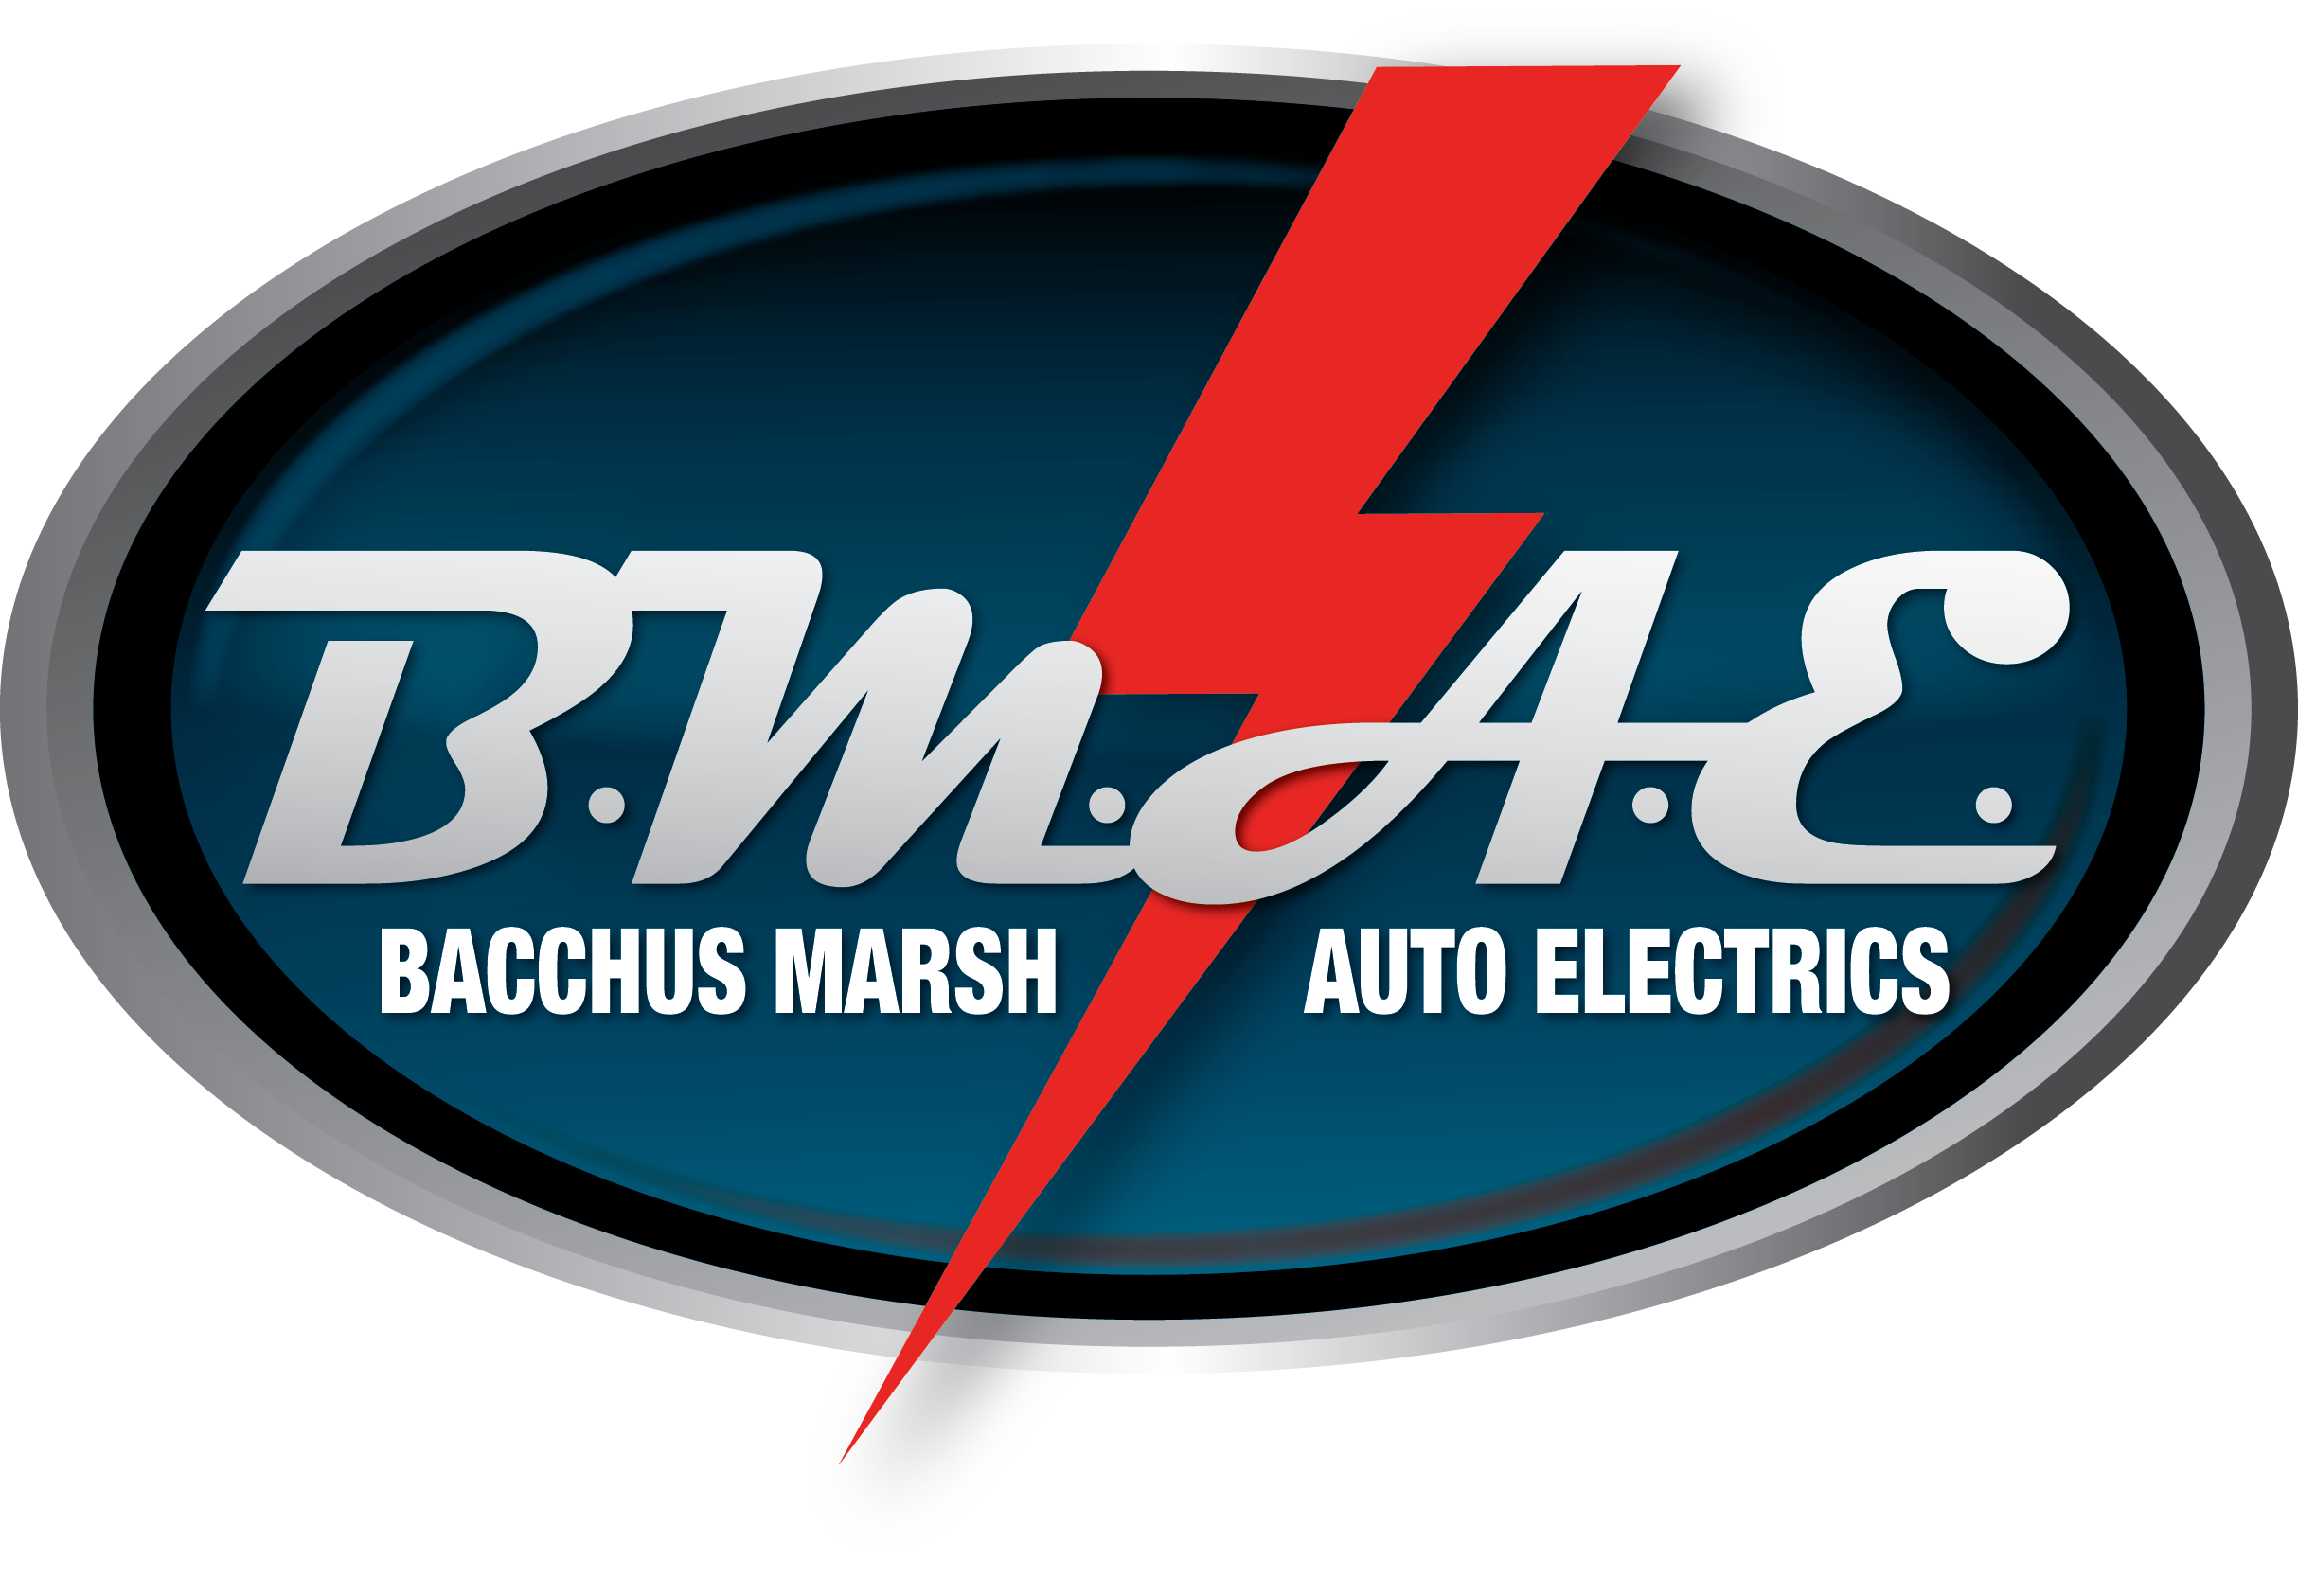 Bacchus Marsh Auto Electrics